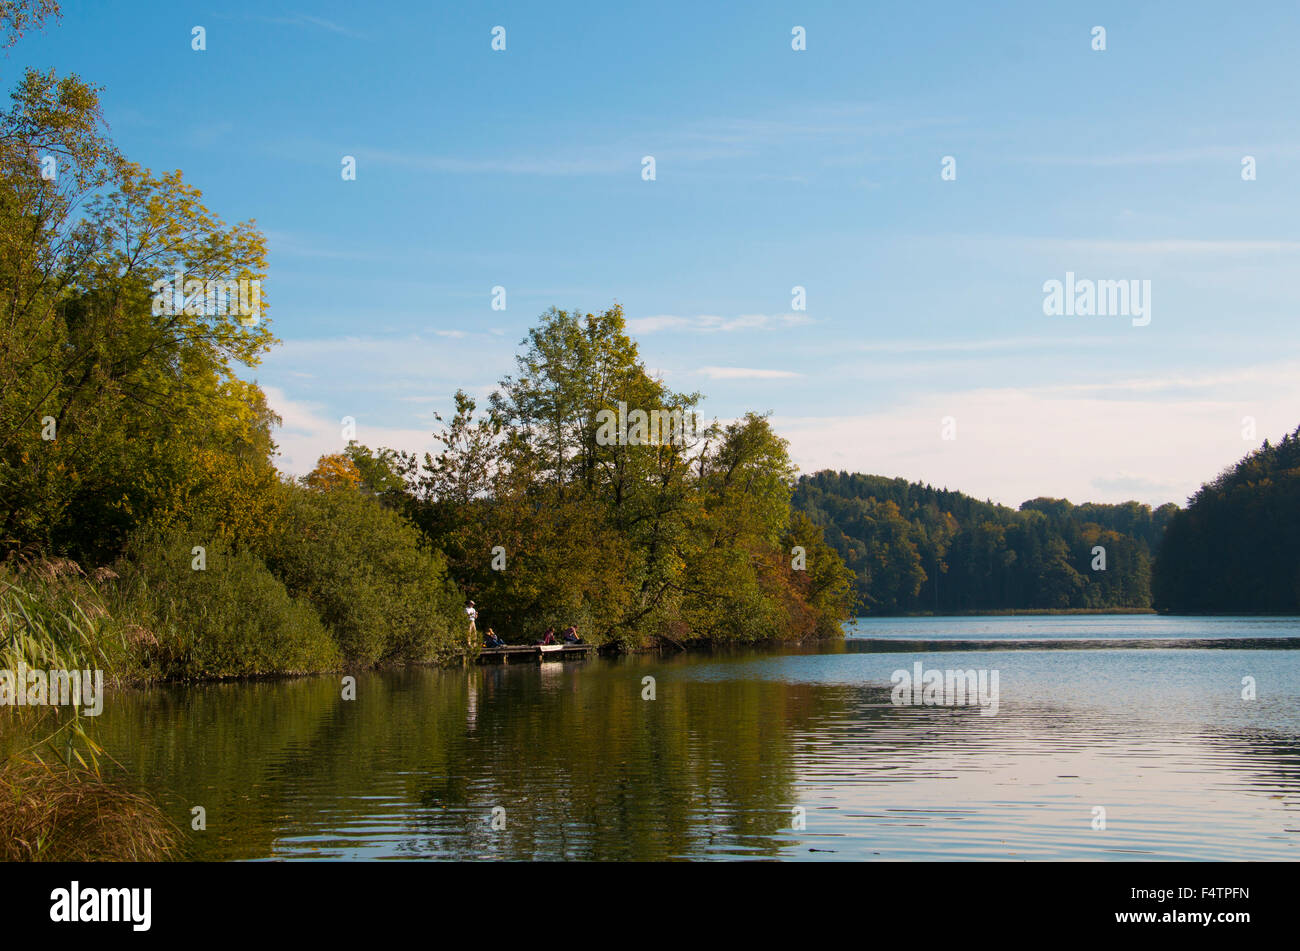 Switzerland, Europe, canton Zurich, Türlersee, lake, autumn, Stock Photo